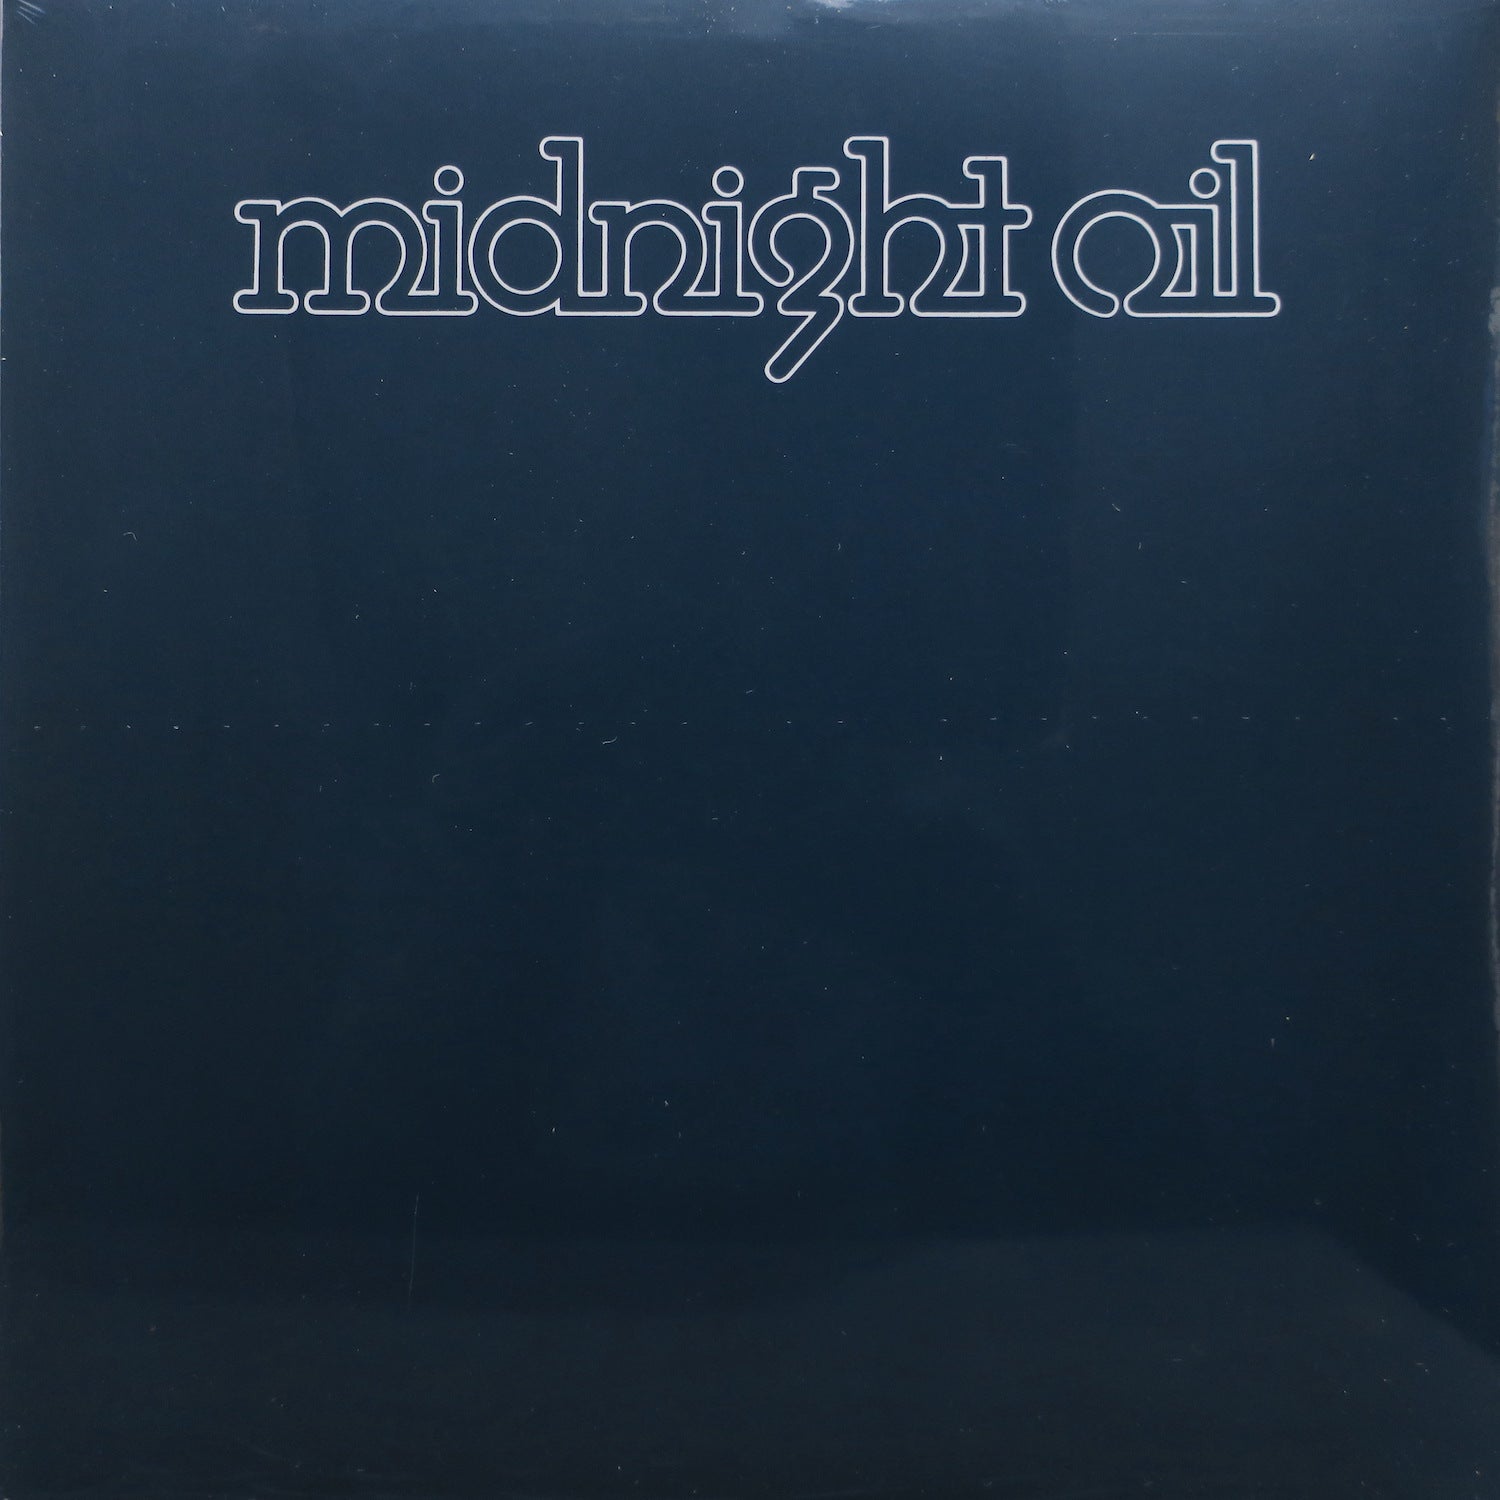 MIDNIGHT OIL - MIDNIGHT OIL - VINYL LP - Wah Wah Records